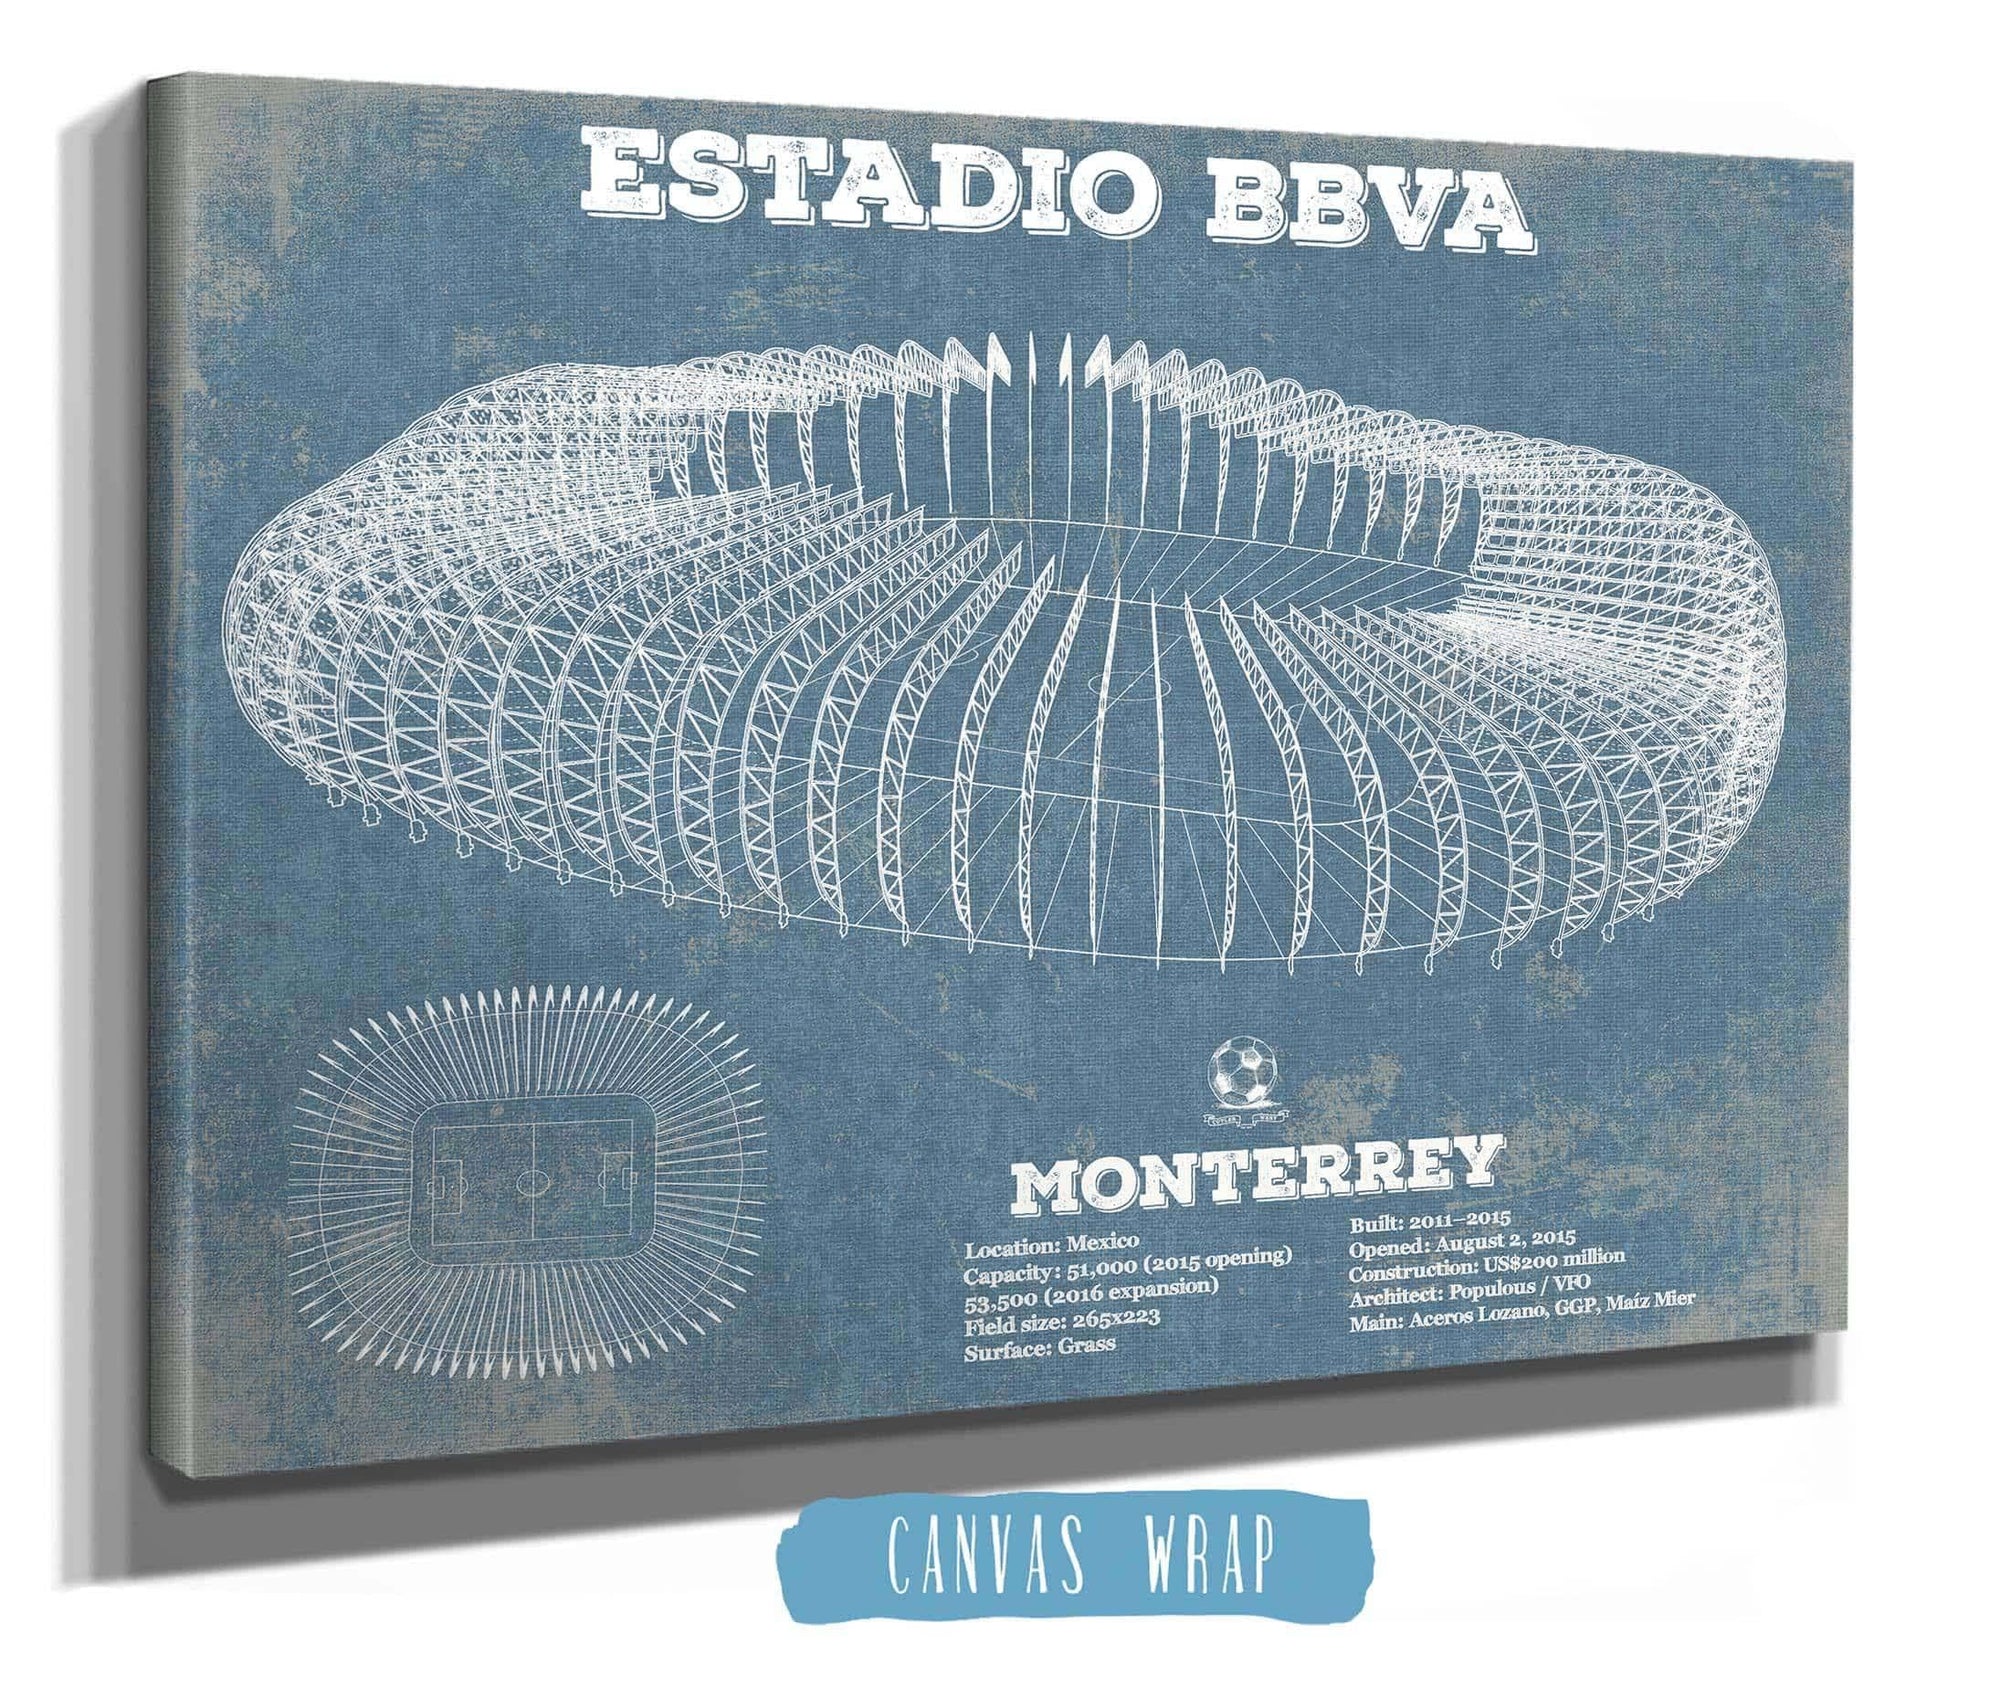 Cutler West Soccer Collection Monterrey Vintage Estadio BBVA Soccer Print